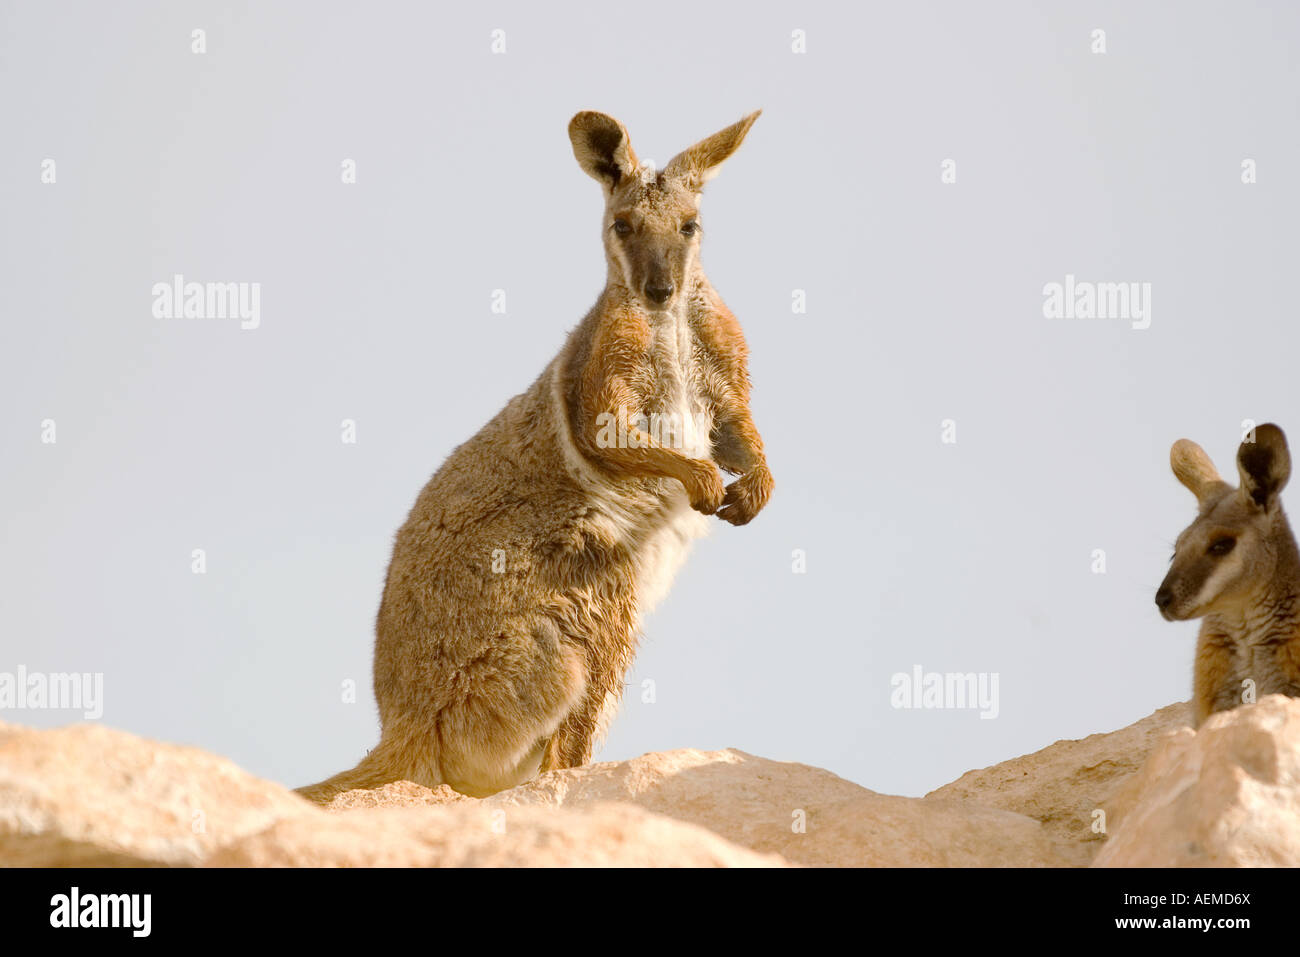 Belle image d'un rock wallaby à pieds jaunes Banque D'Images